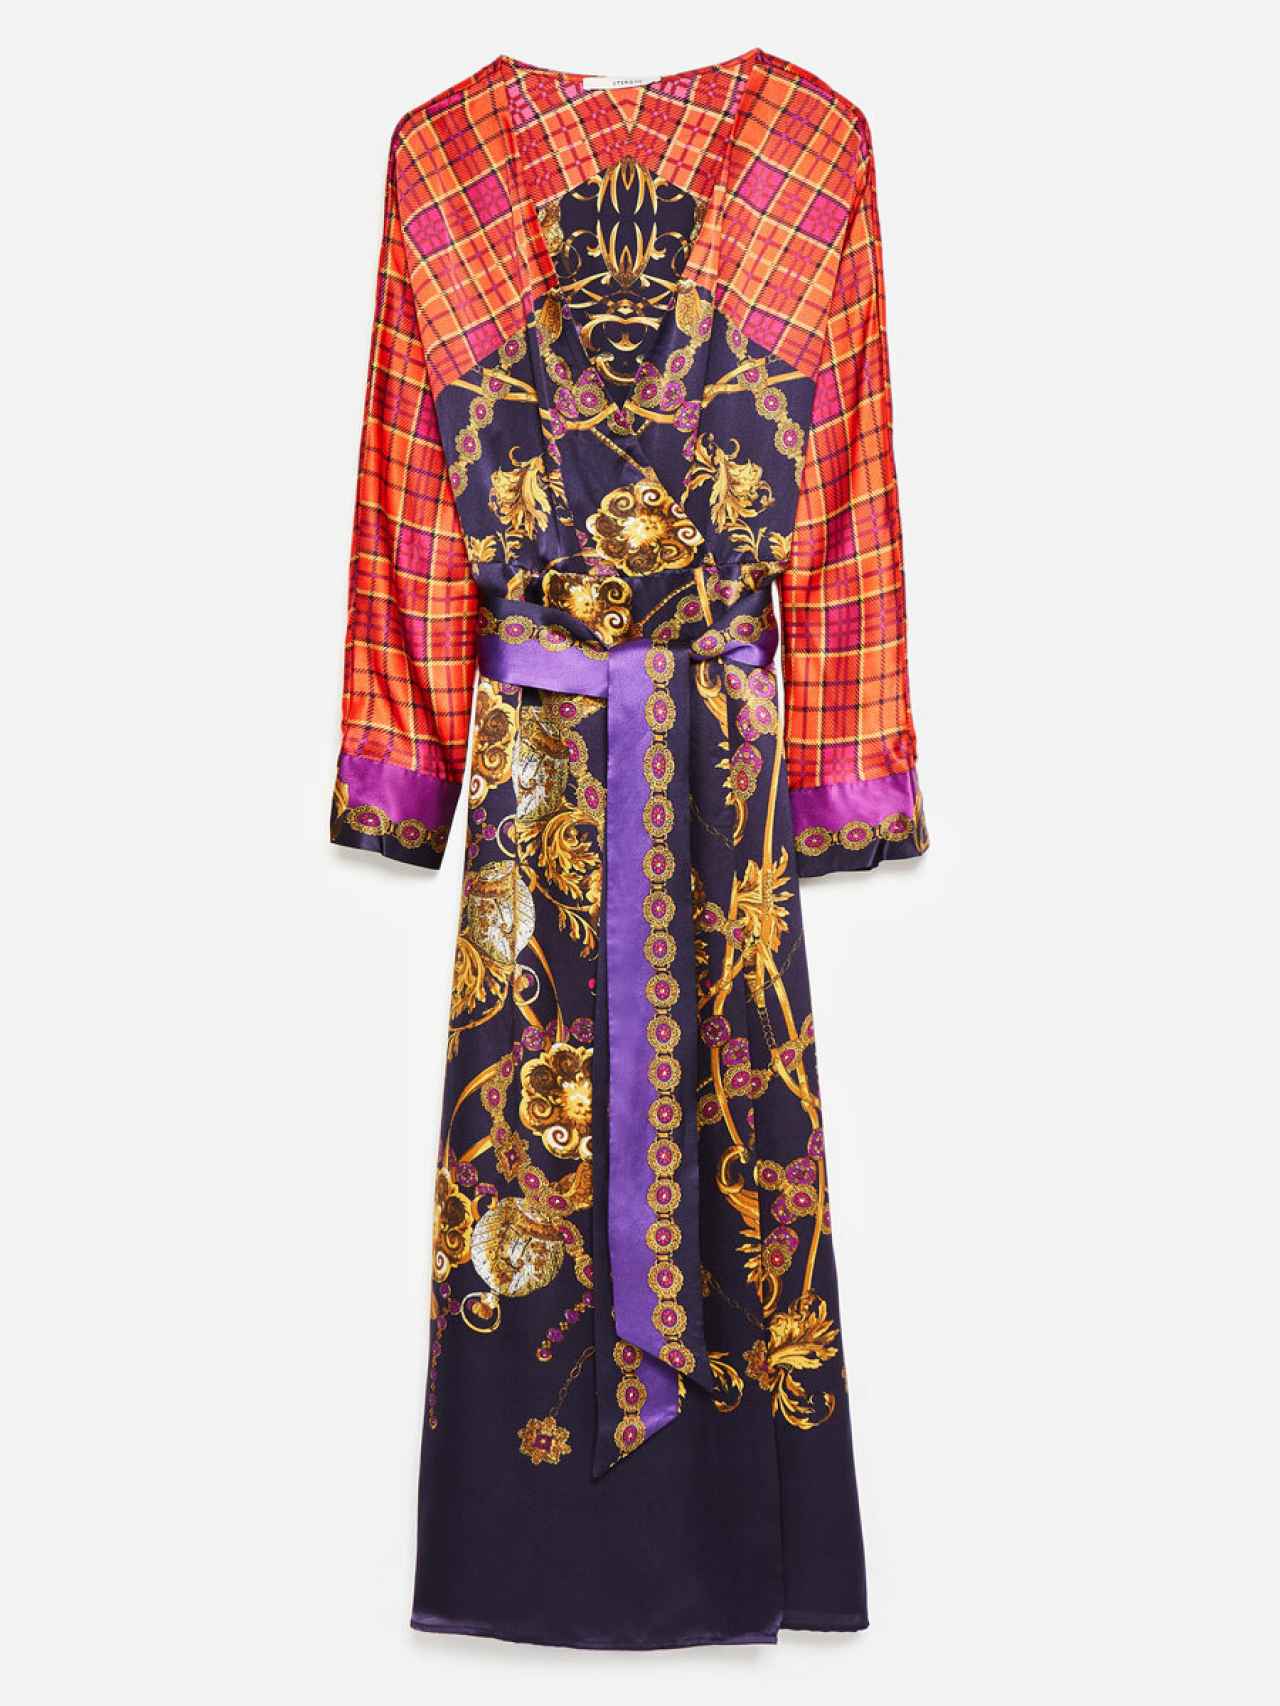 El vestido combina los estampados tartán y de cadenas típicos de Versace.